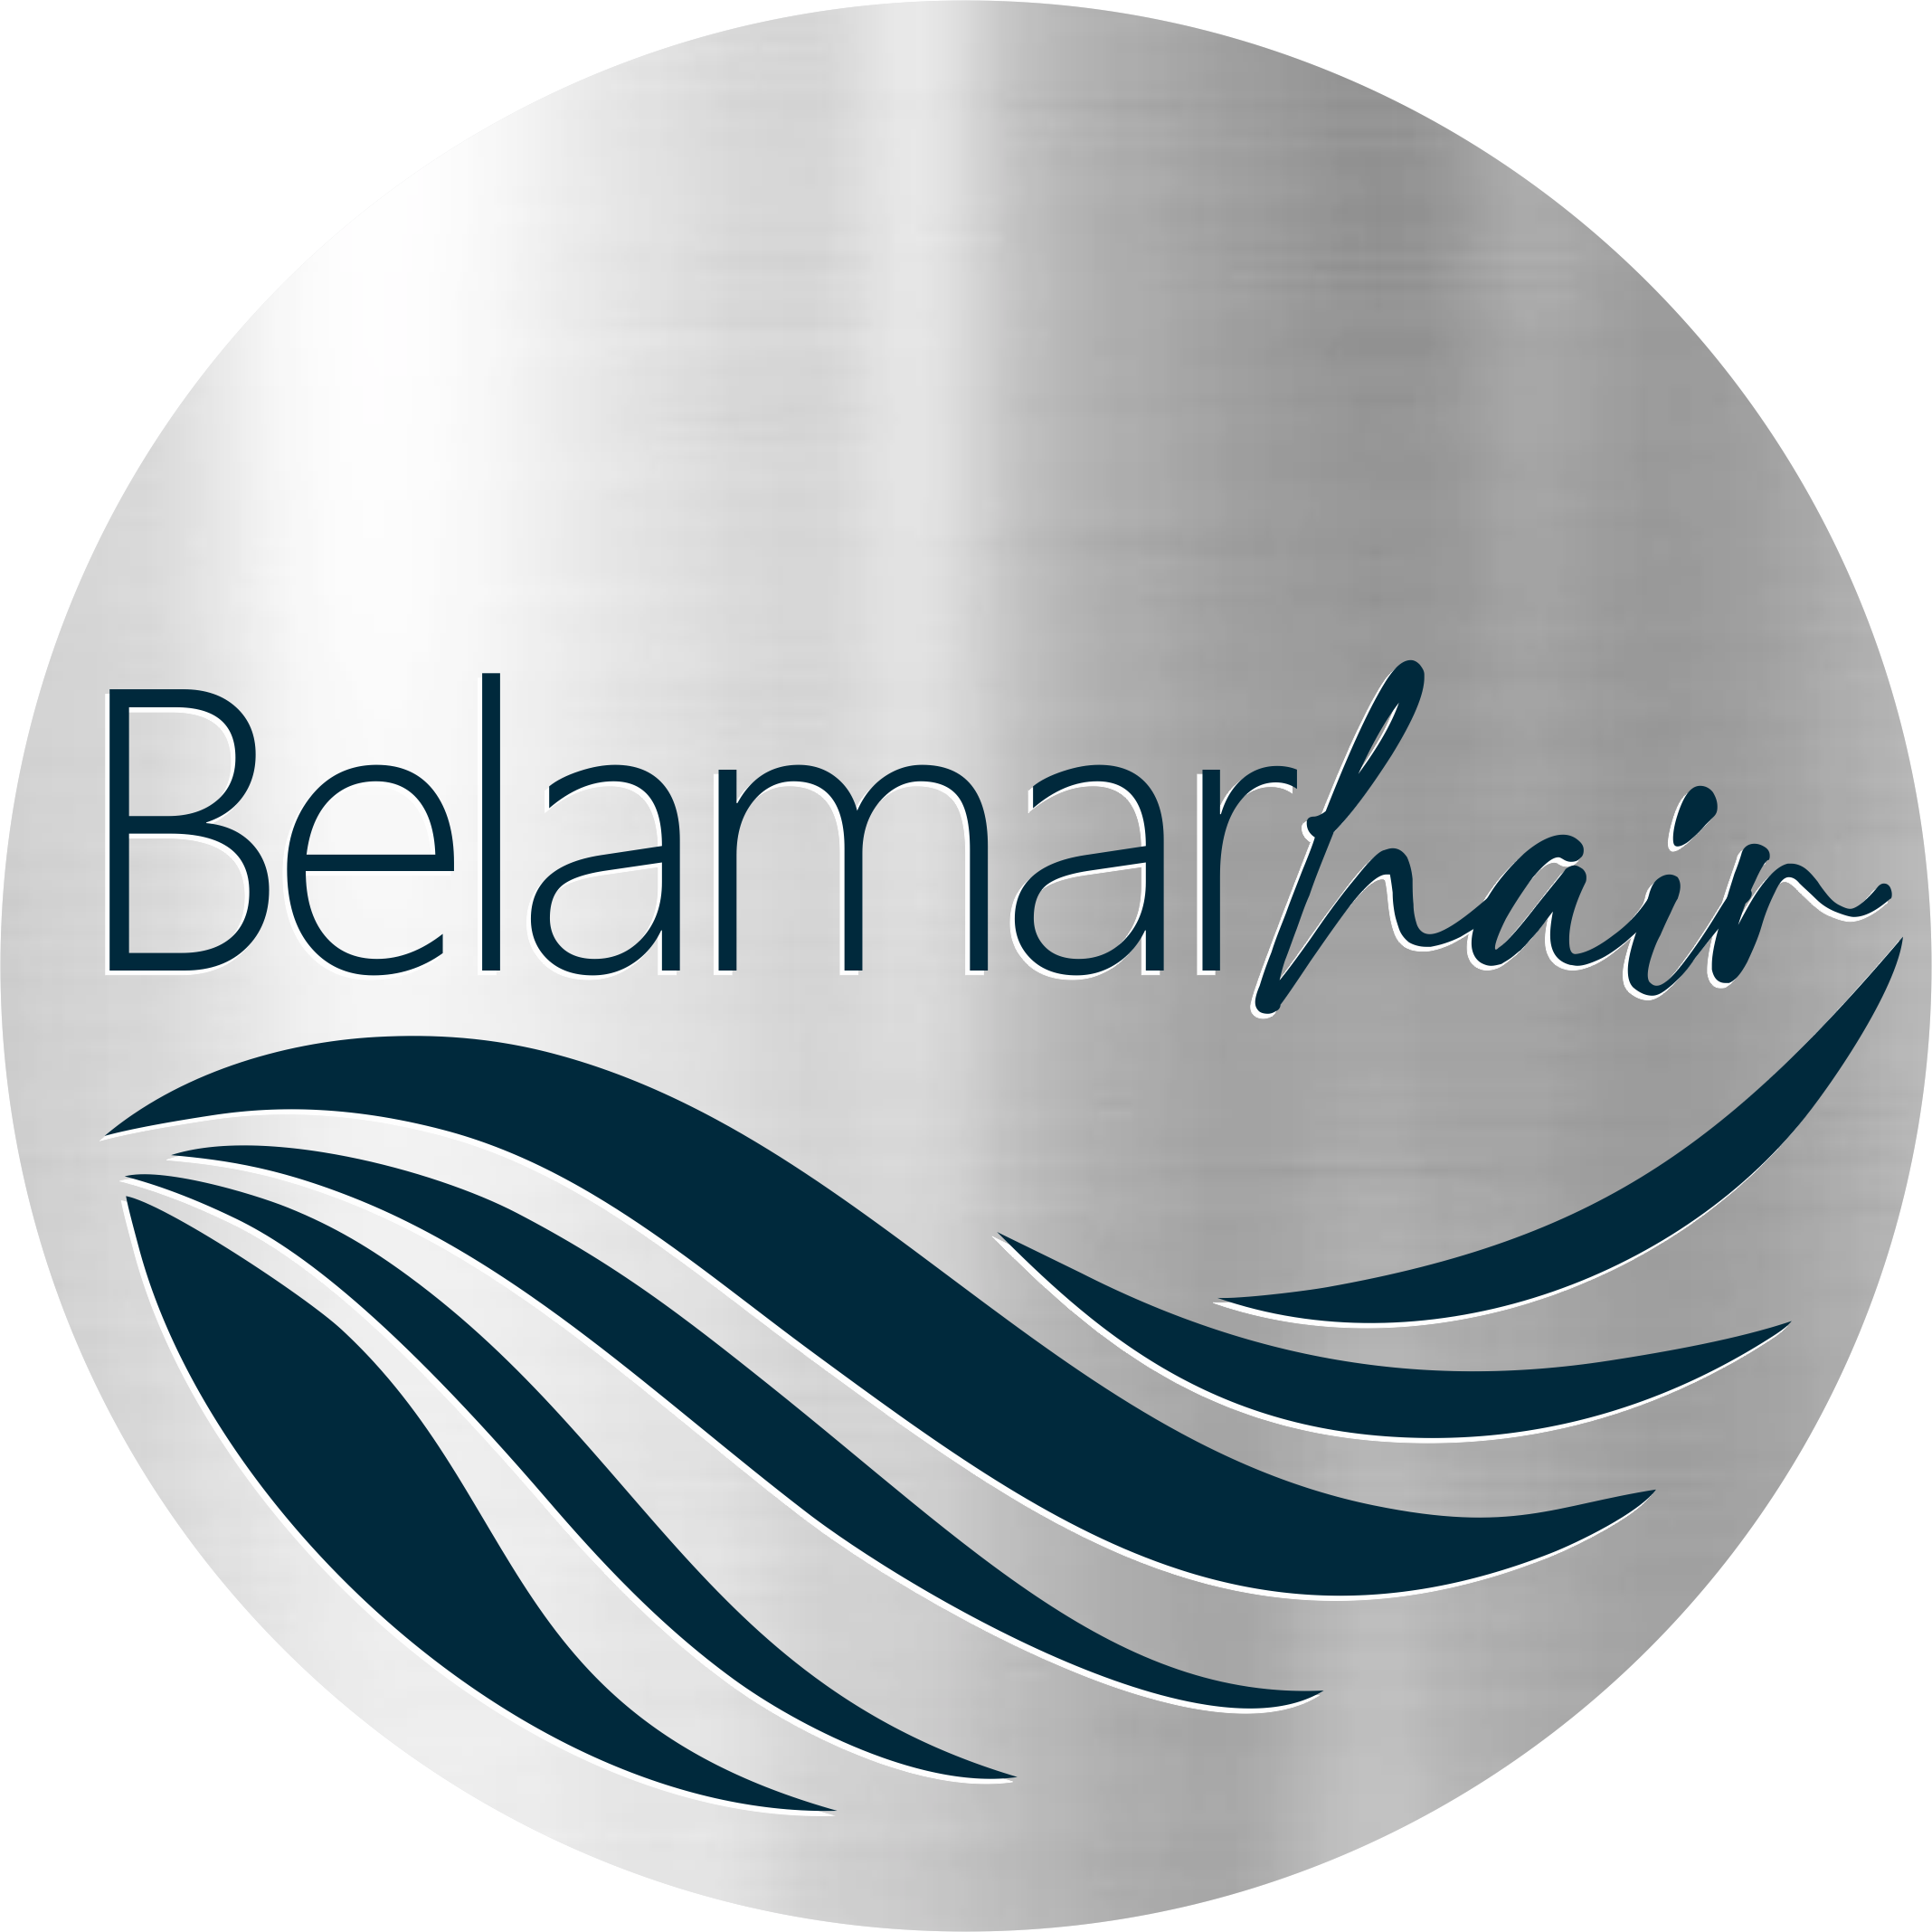 Belamarhair